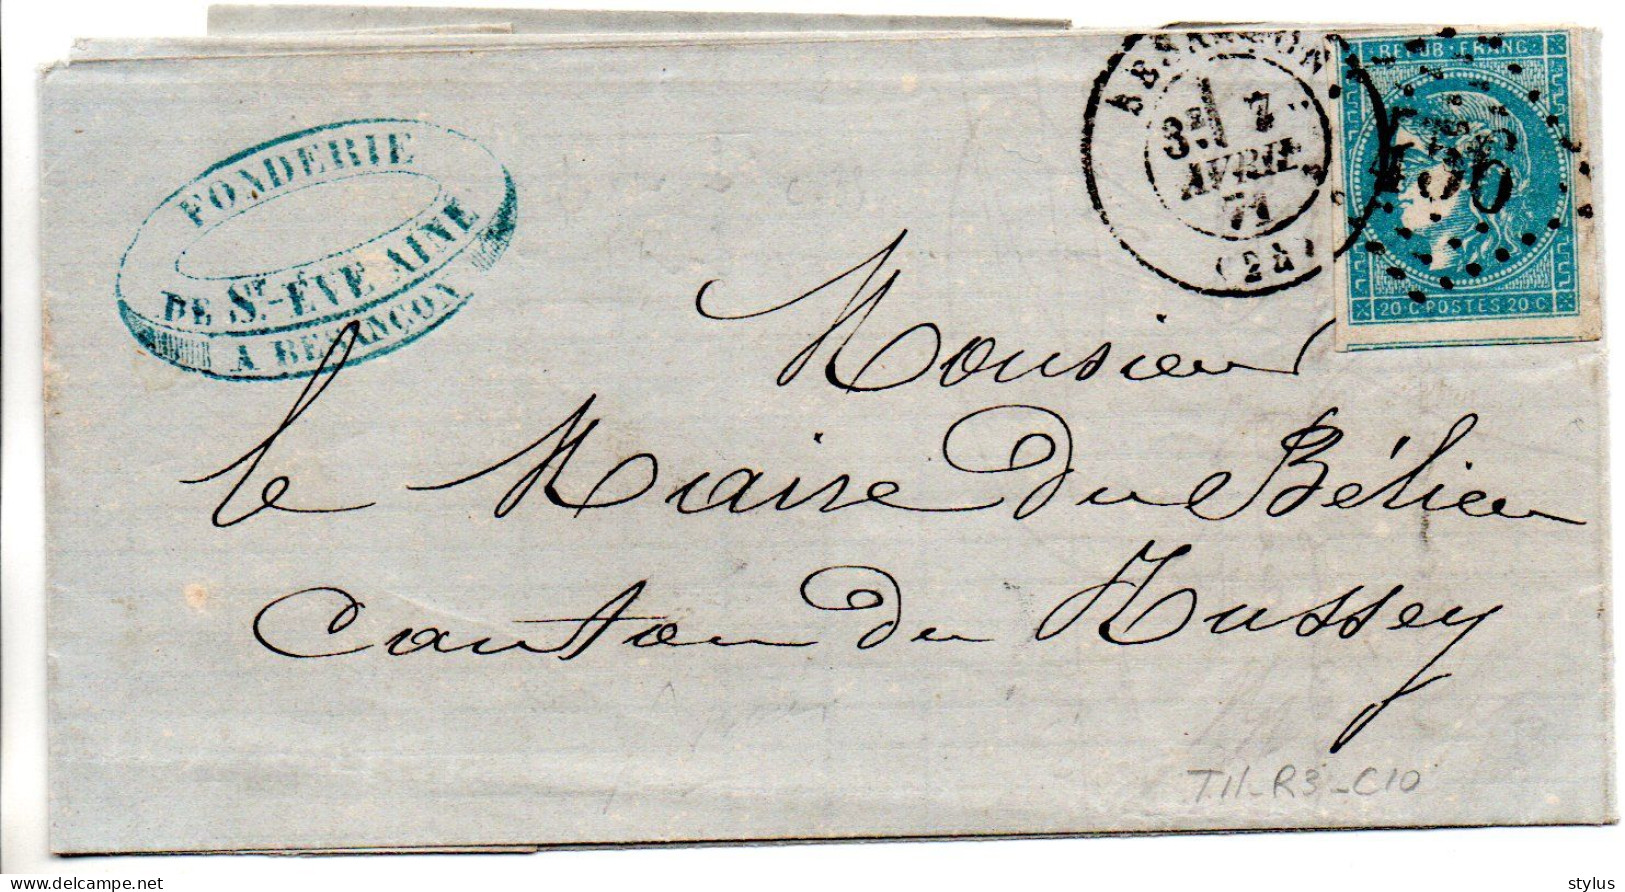 Lettre Besançon Bordeaux TII R3 C10 - 1870 Bordeaux Printing